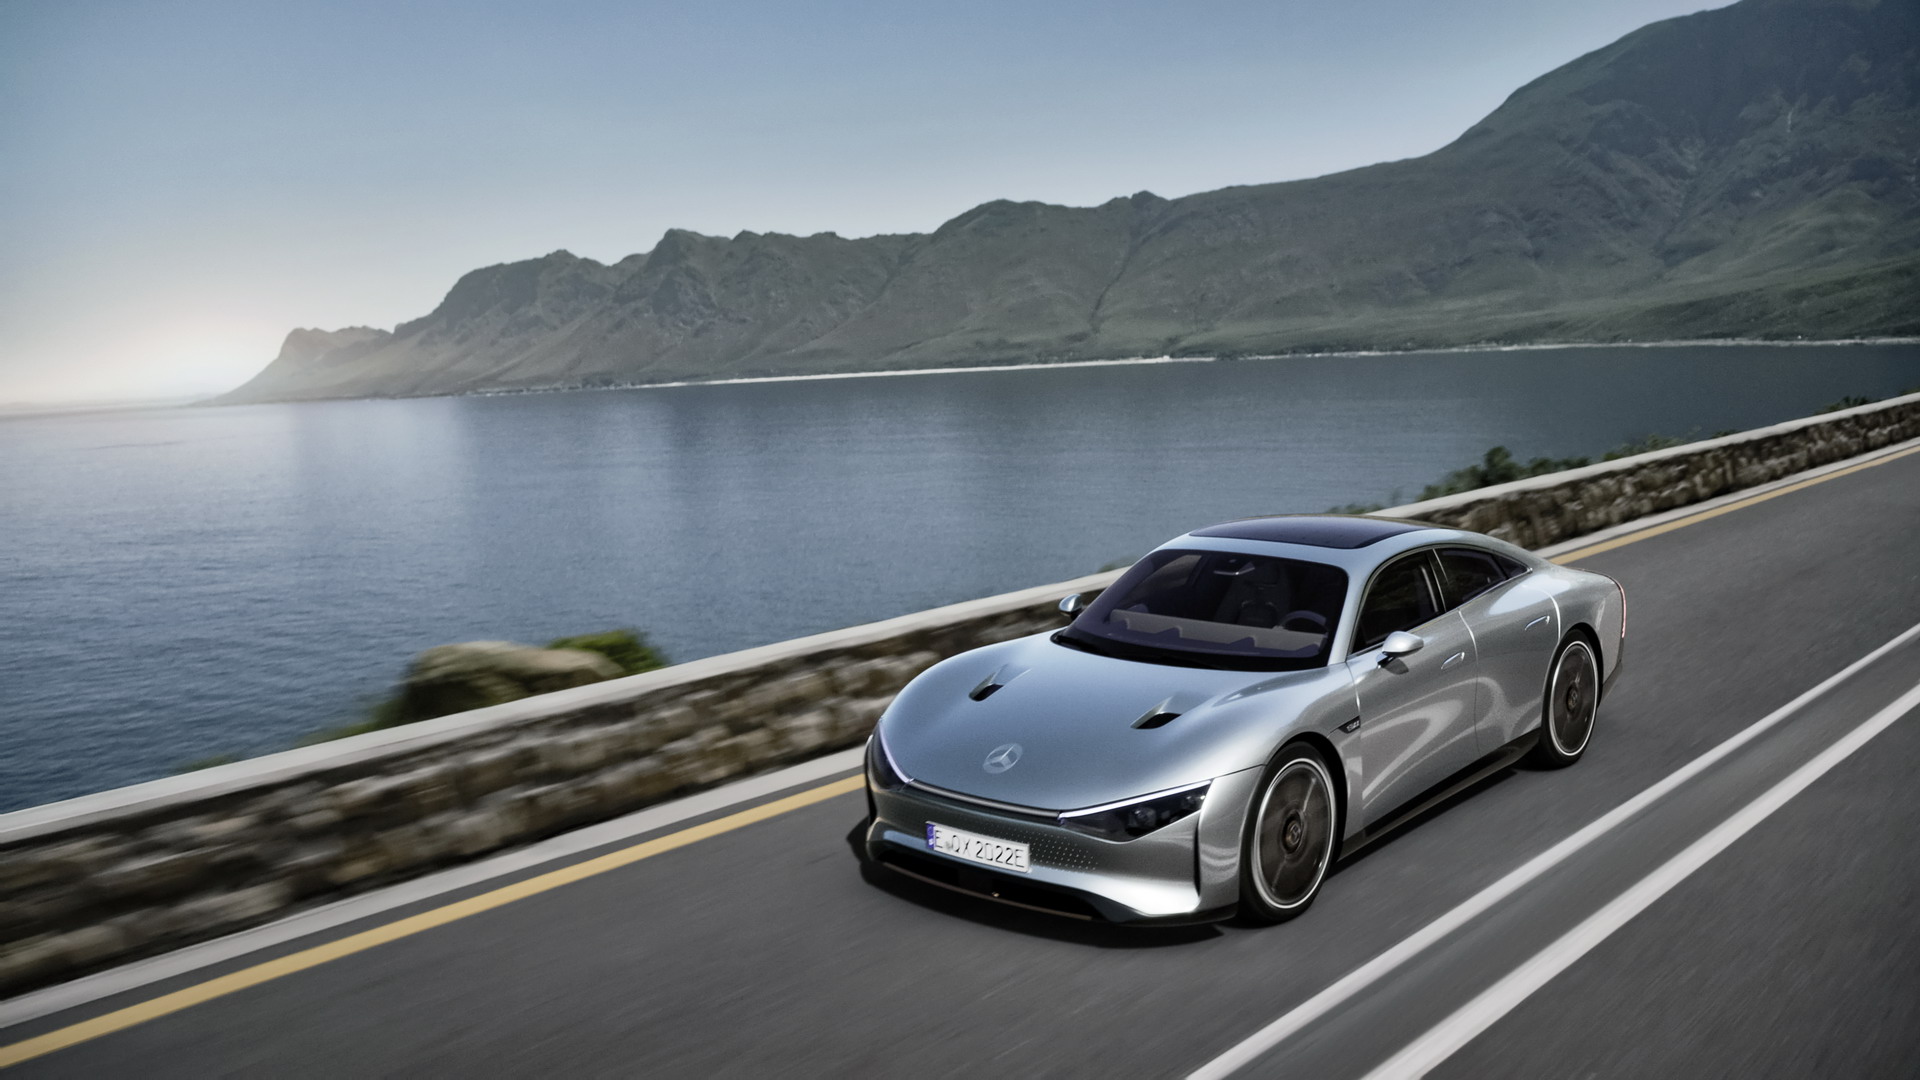 Siêu phẩm Mercedes-Benz sẽ nằm cùng sàn trưng bày 3 xe VinFast mới: Màn hình  cảm ứng siêu rộng, sạc một lần chạy  km